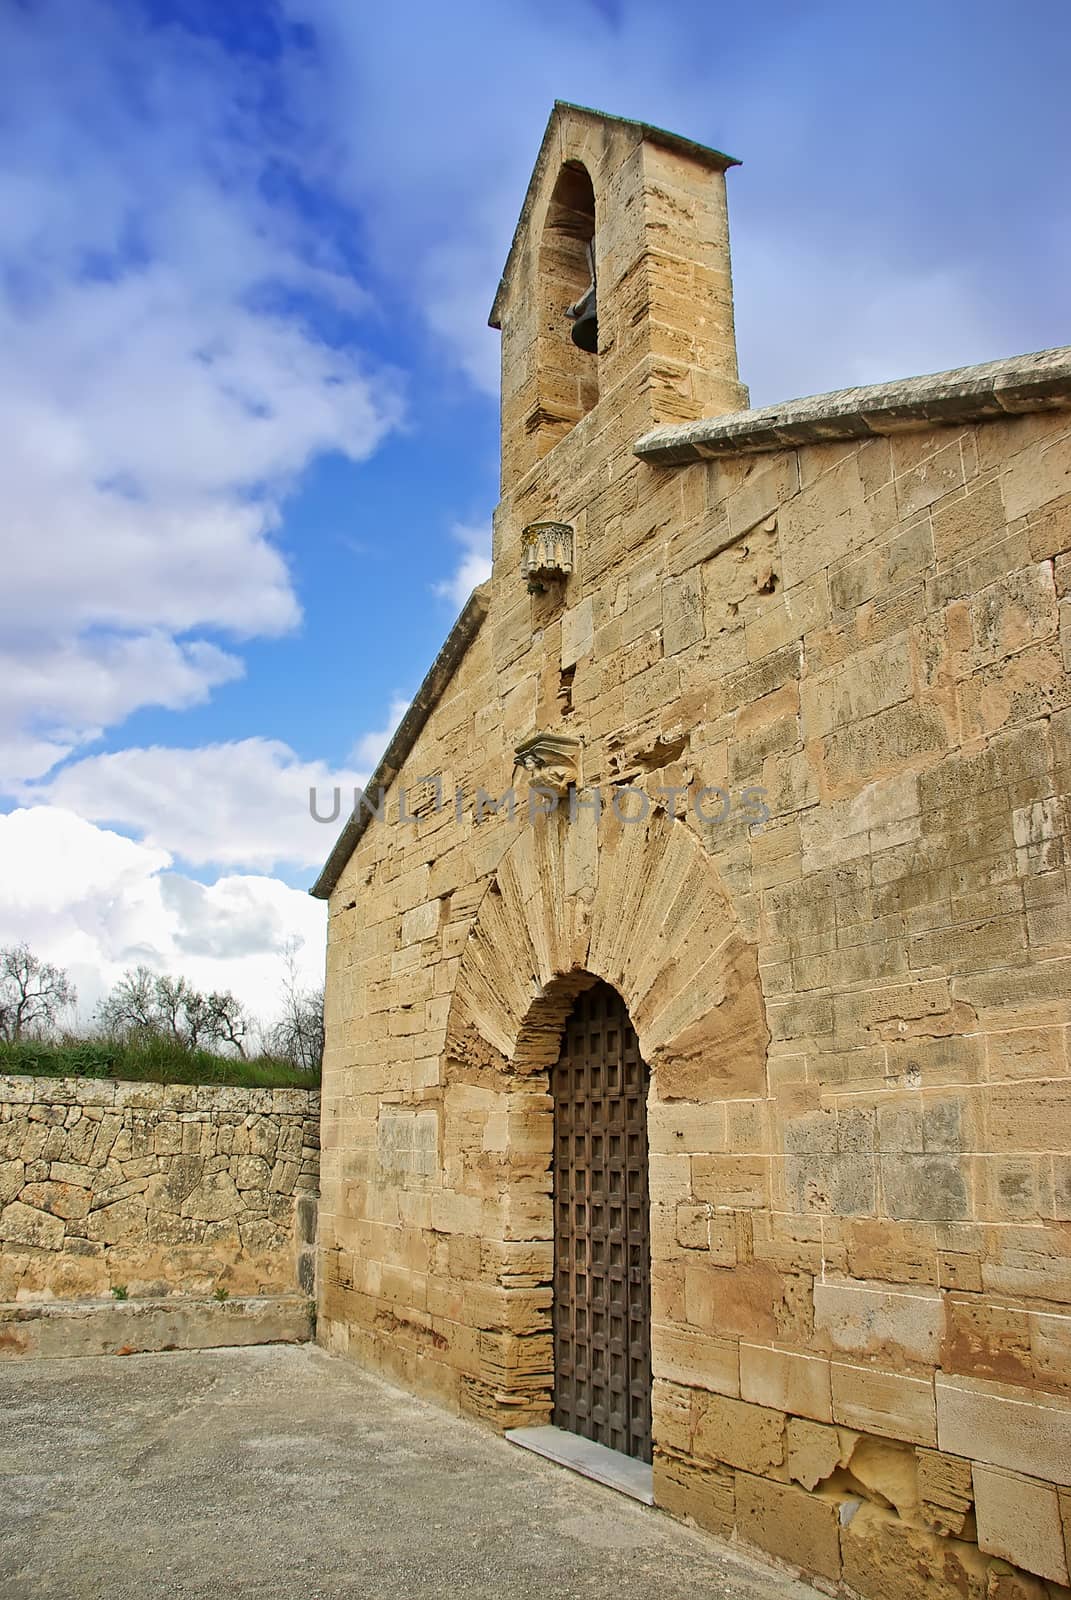 Santa Anna church in Alcudia (Majorca - Spain)